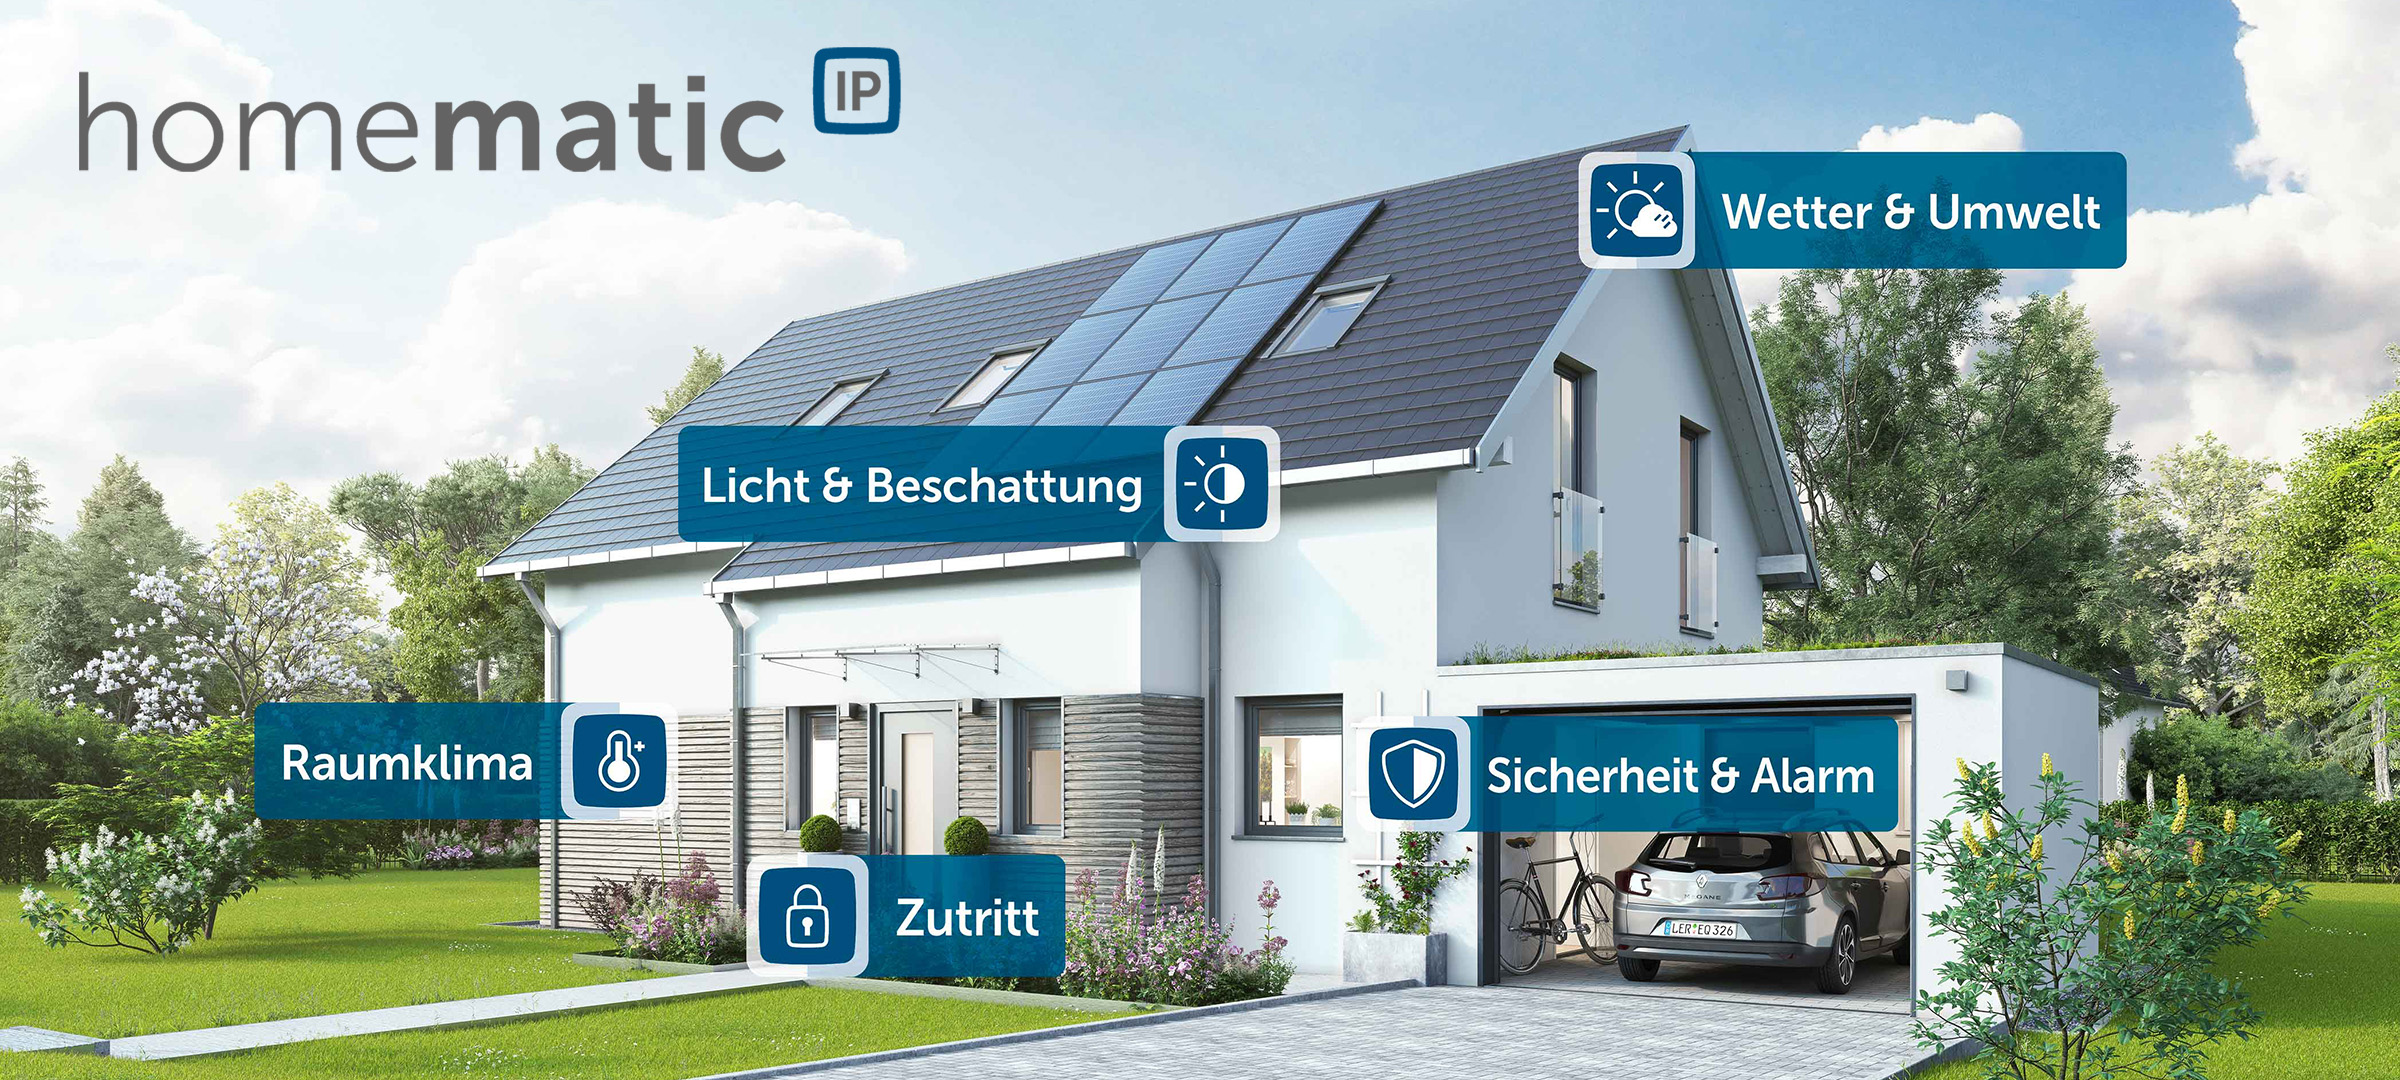 Darstellung eines Hauses mit den verschiedenen Smarten Haussteuerungen von Homematic IP. Abgedeckt wird das Raumklima, der Zuritt, Licht & Beschattung, Wetter & Umwelt sowie Sicher & Alarm.